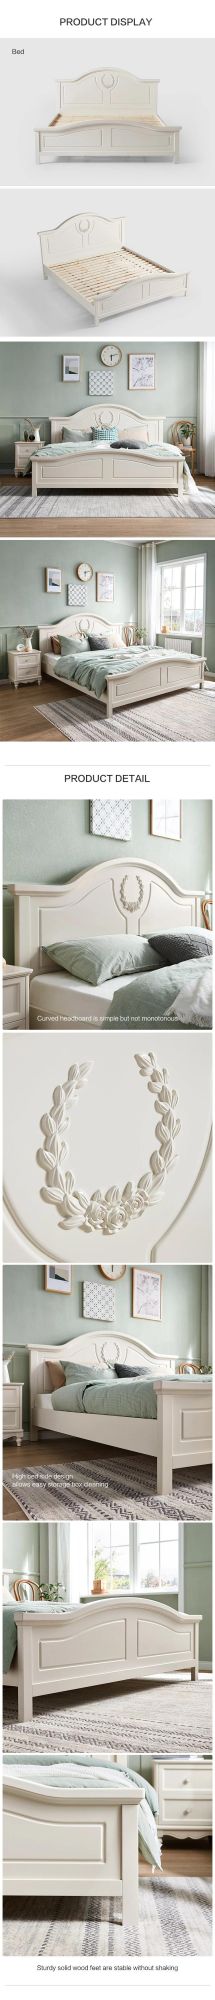 Linsy Modern White Wood Beds Bedroom Furniture Set Bd4a